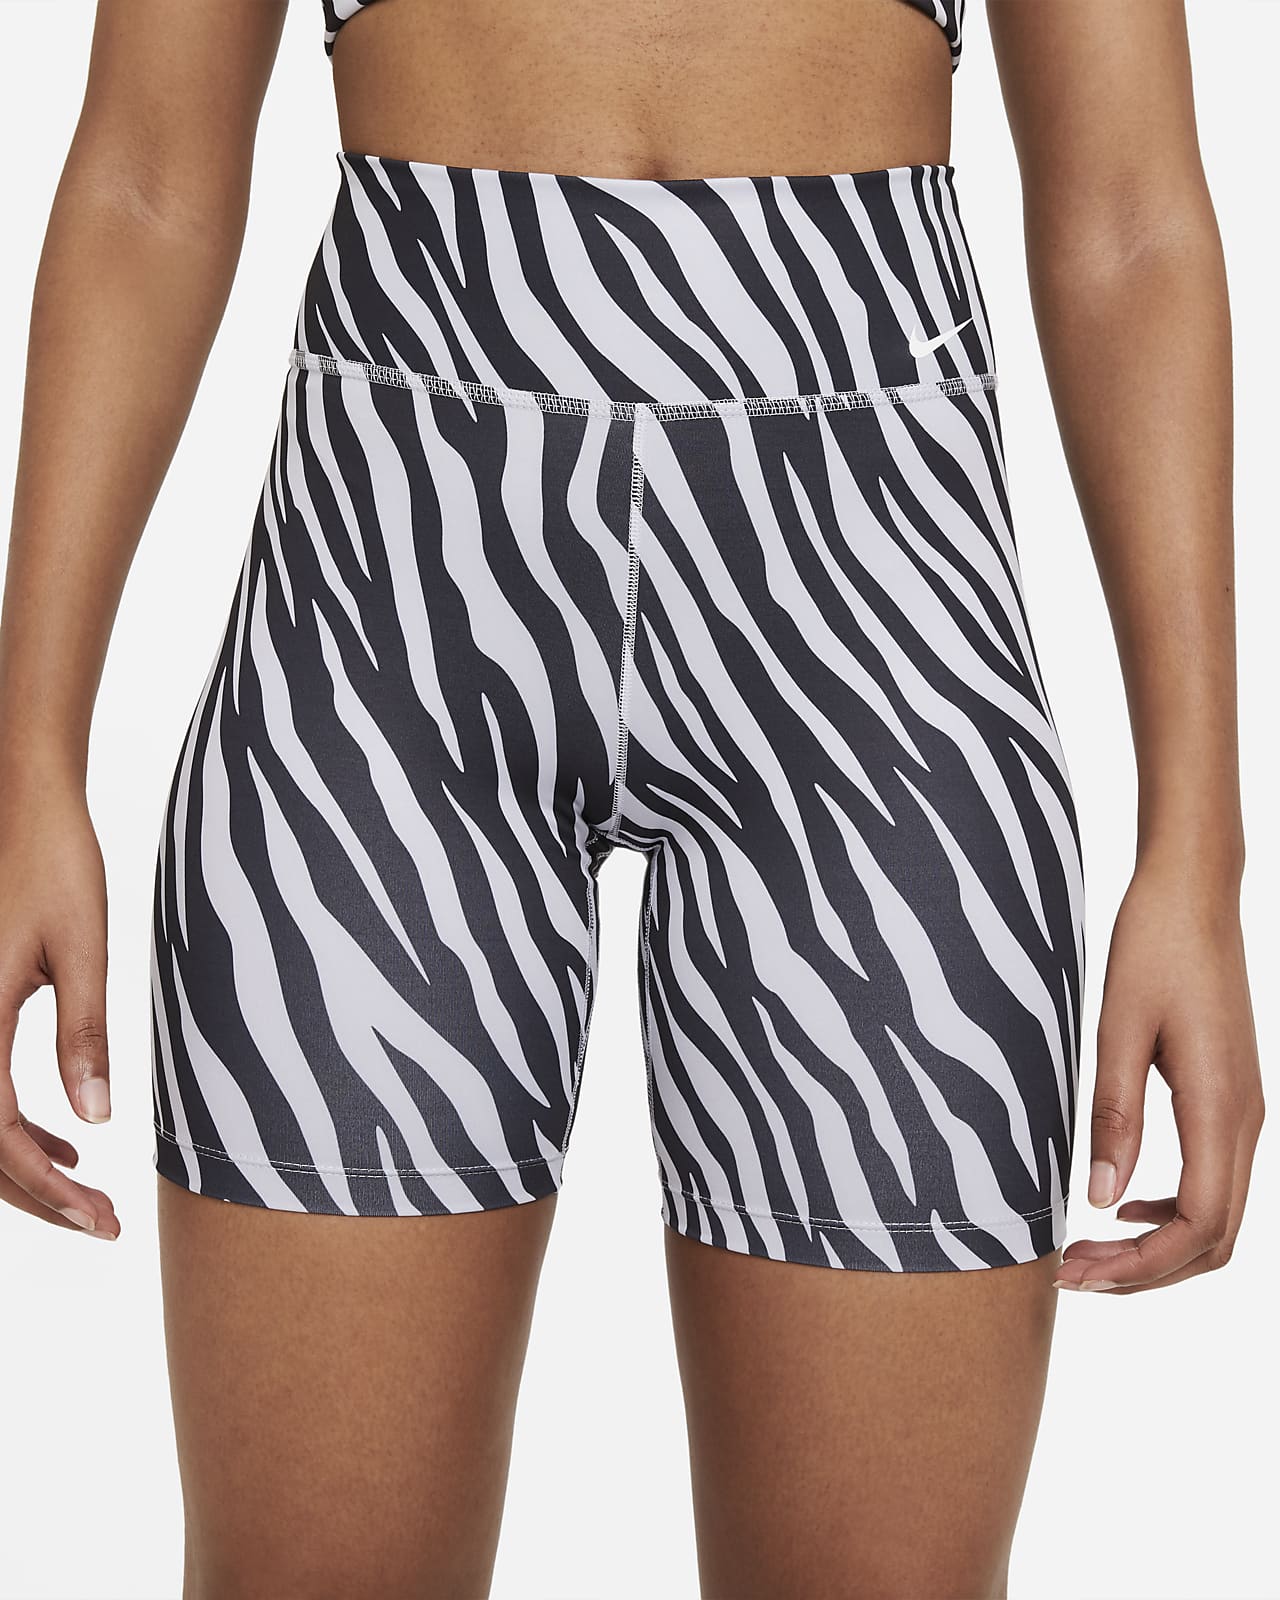 nike zebra shorts